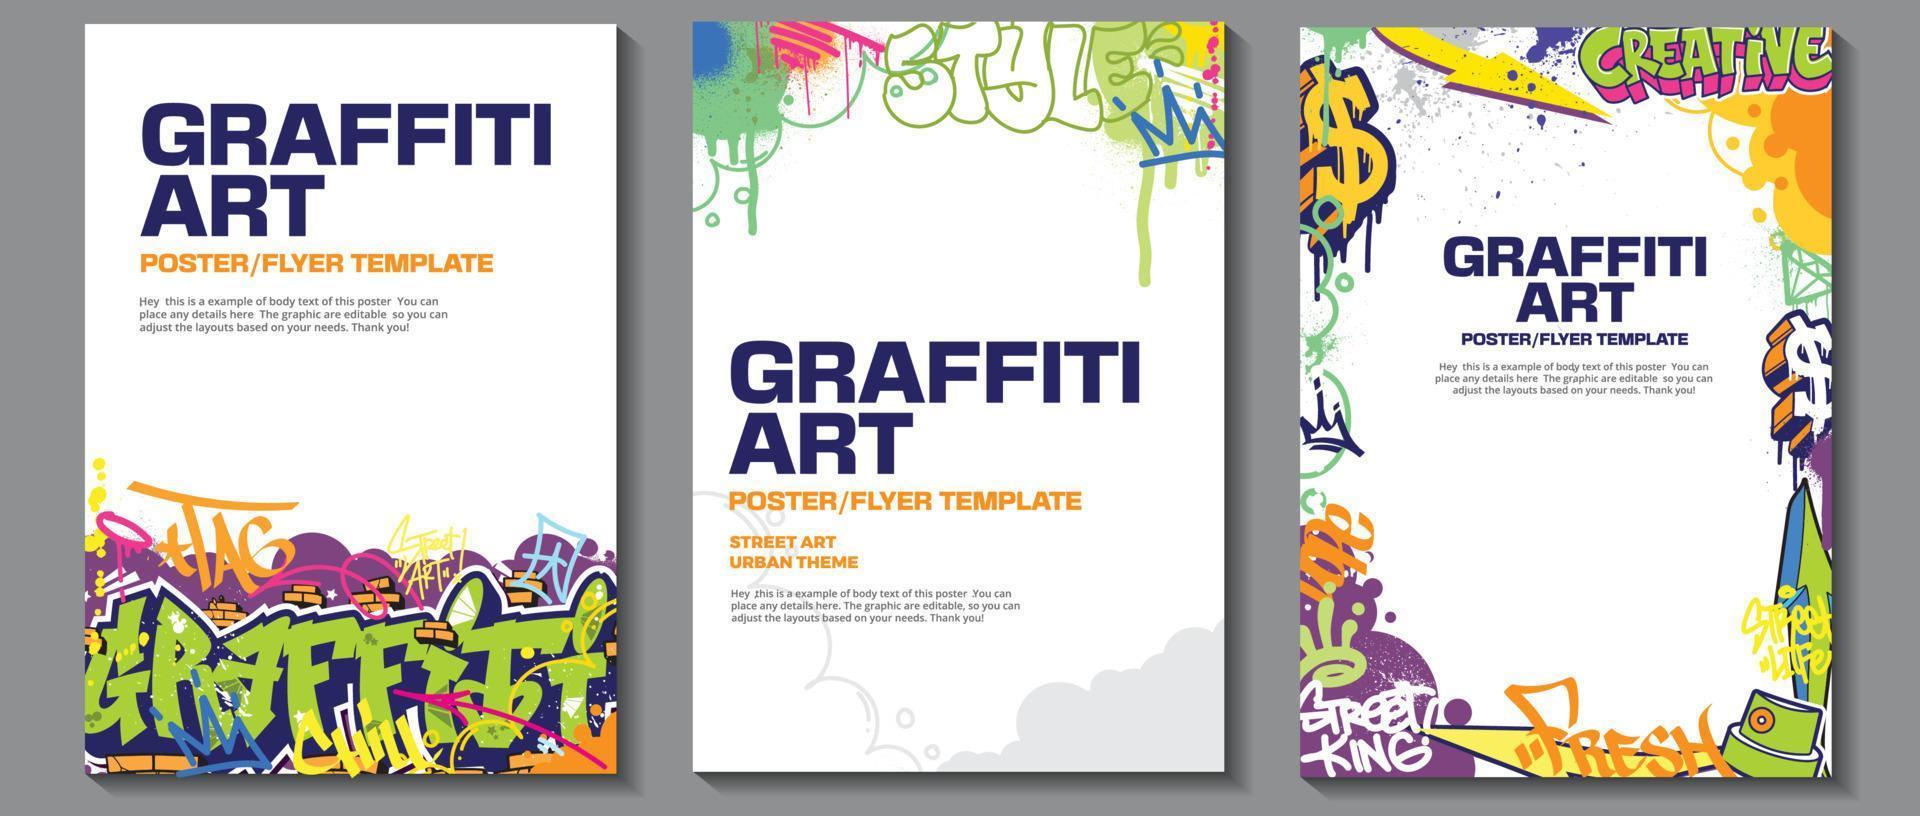 modern graffiti konst affisch eller flygblad design med färgrik taggar, kasta upp. ritad för hand abstrakt graffiti illustration vektor i gata konst tema